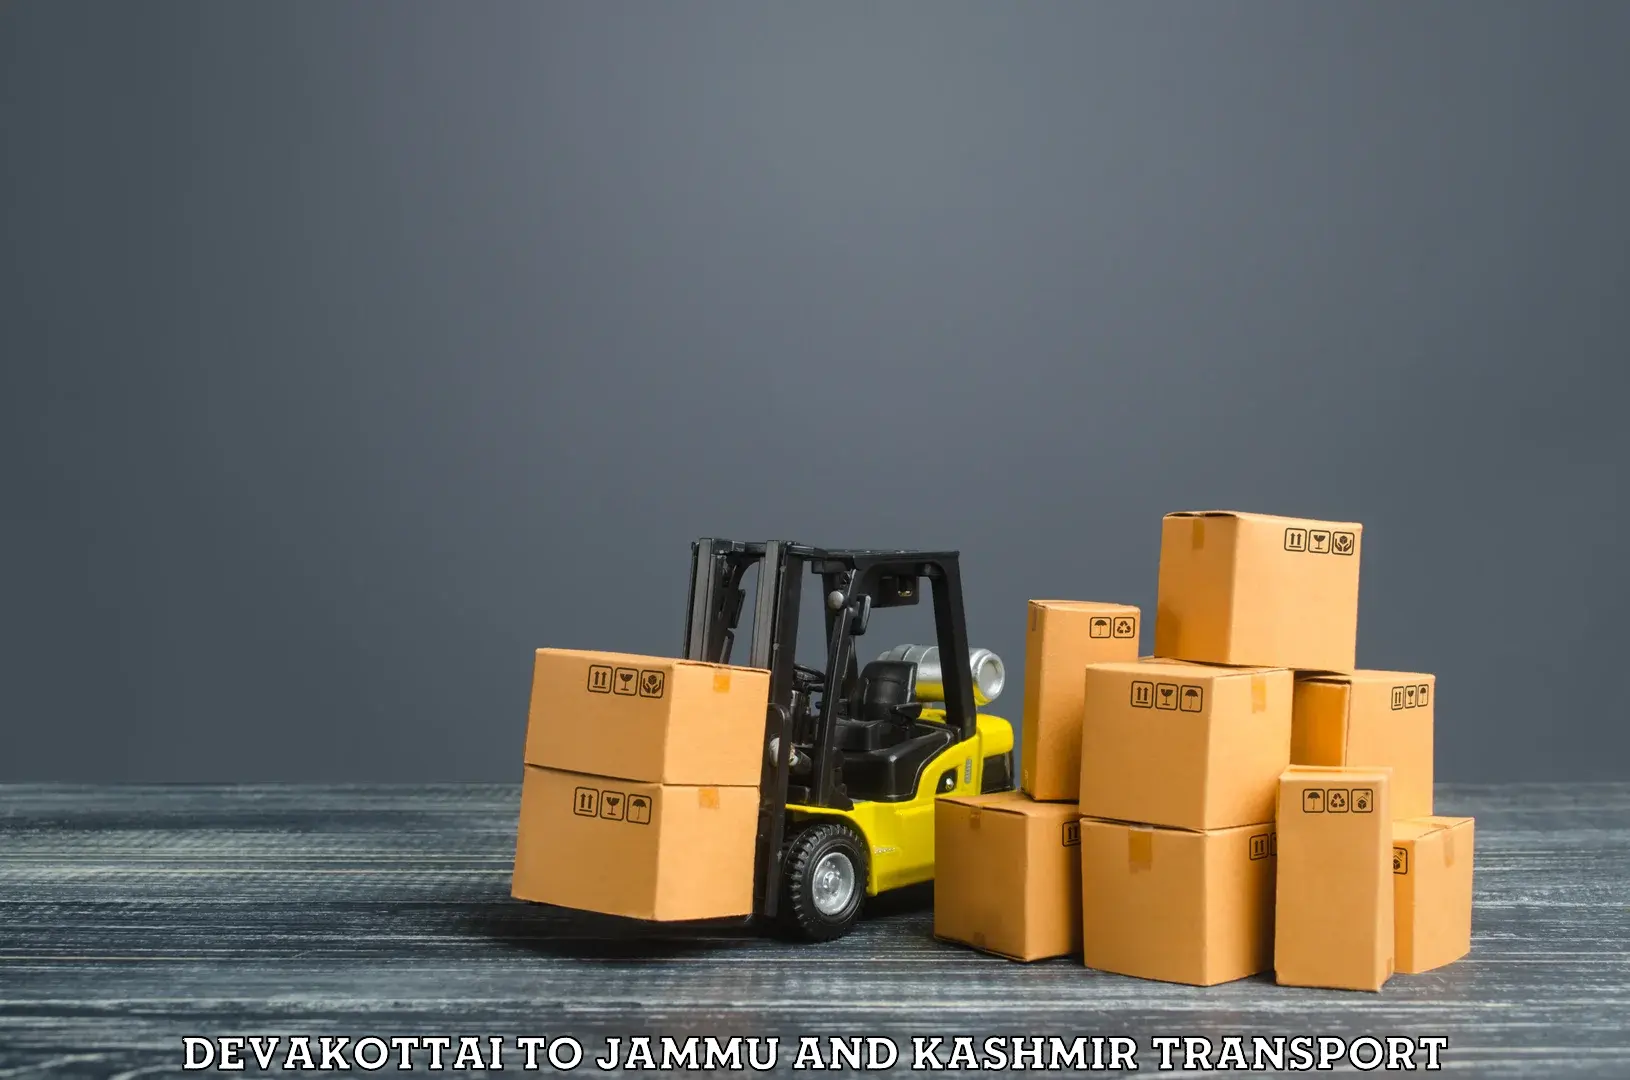 Lorry transport service Devakottai to IIT Jammu